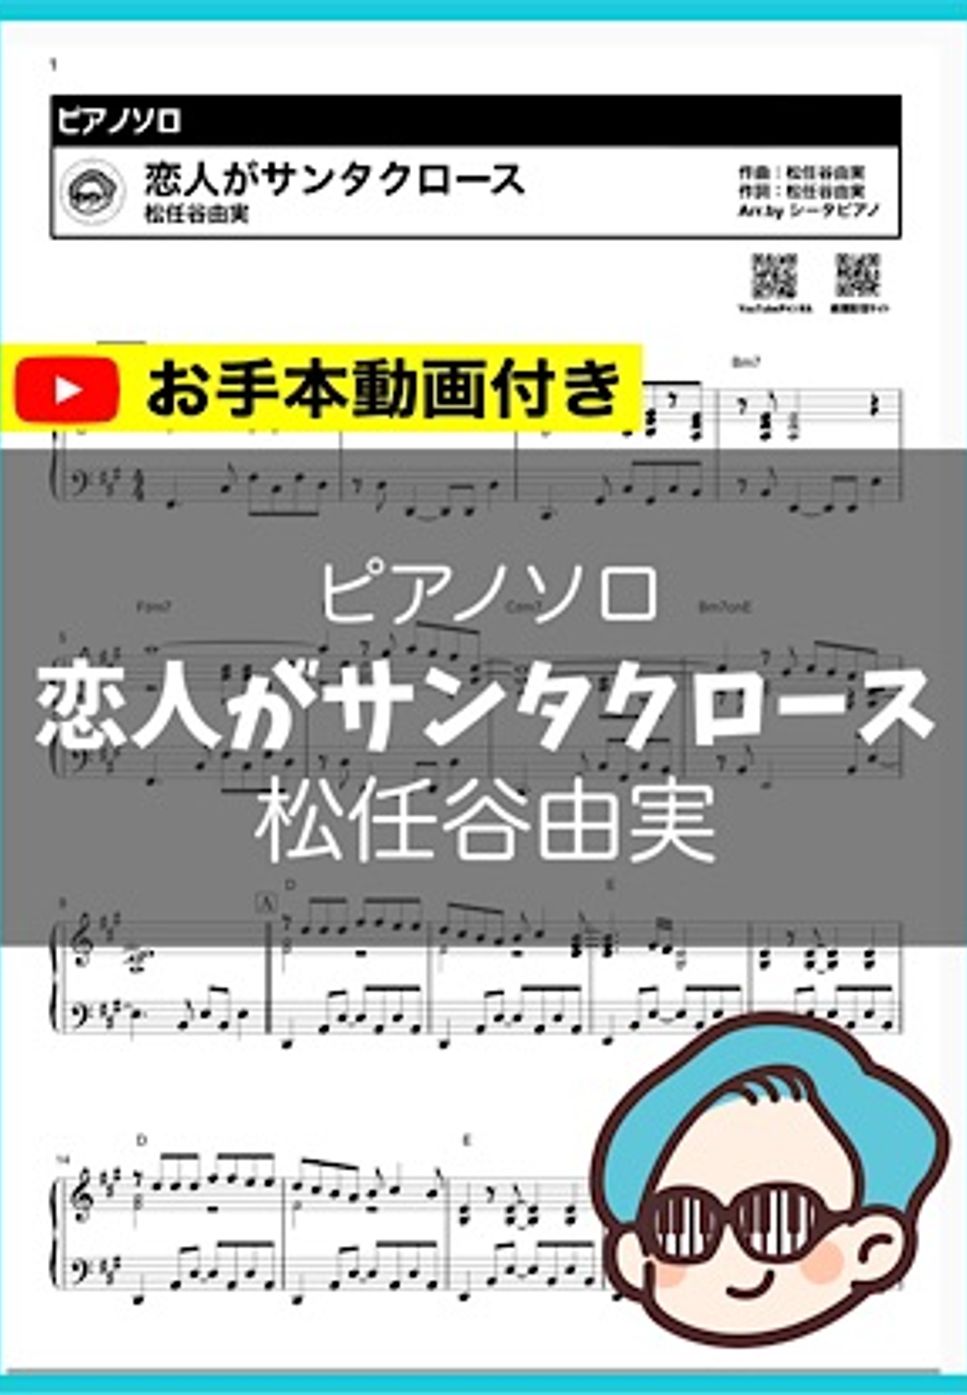 松任谷由美 - 恋人がサンタクロース by シータピアノ